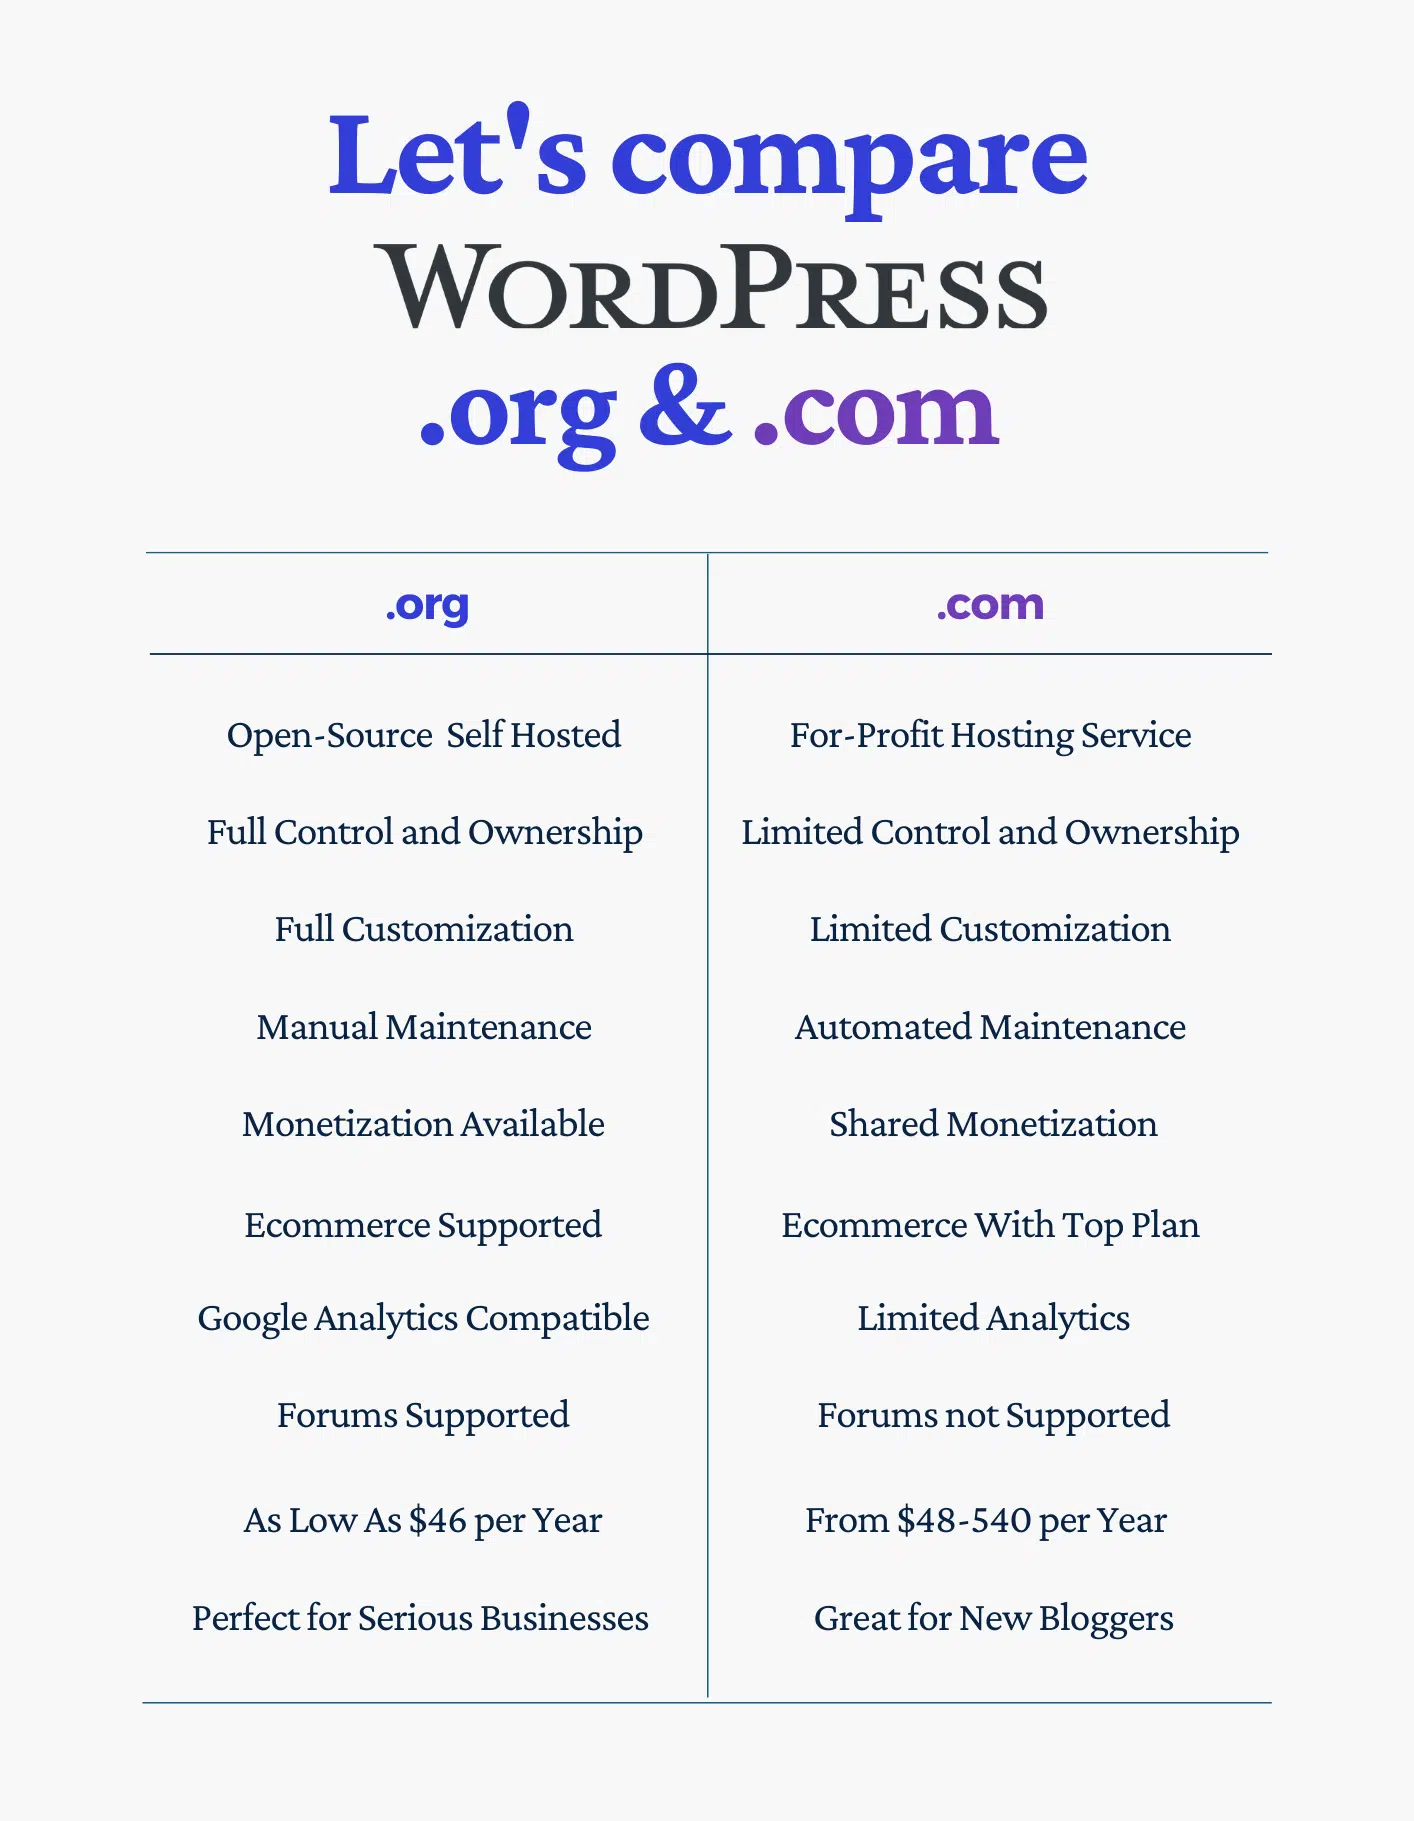 wordpress org vs com comparison table